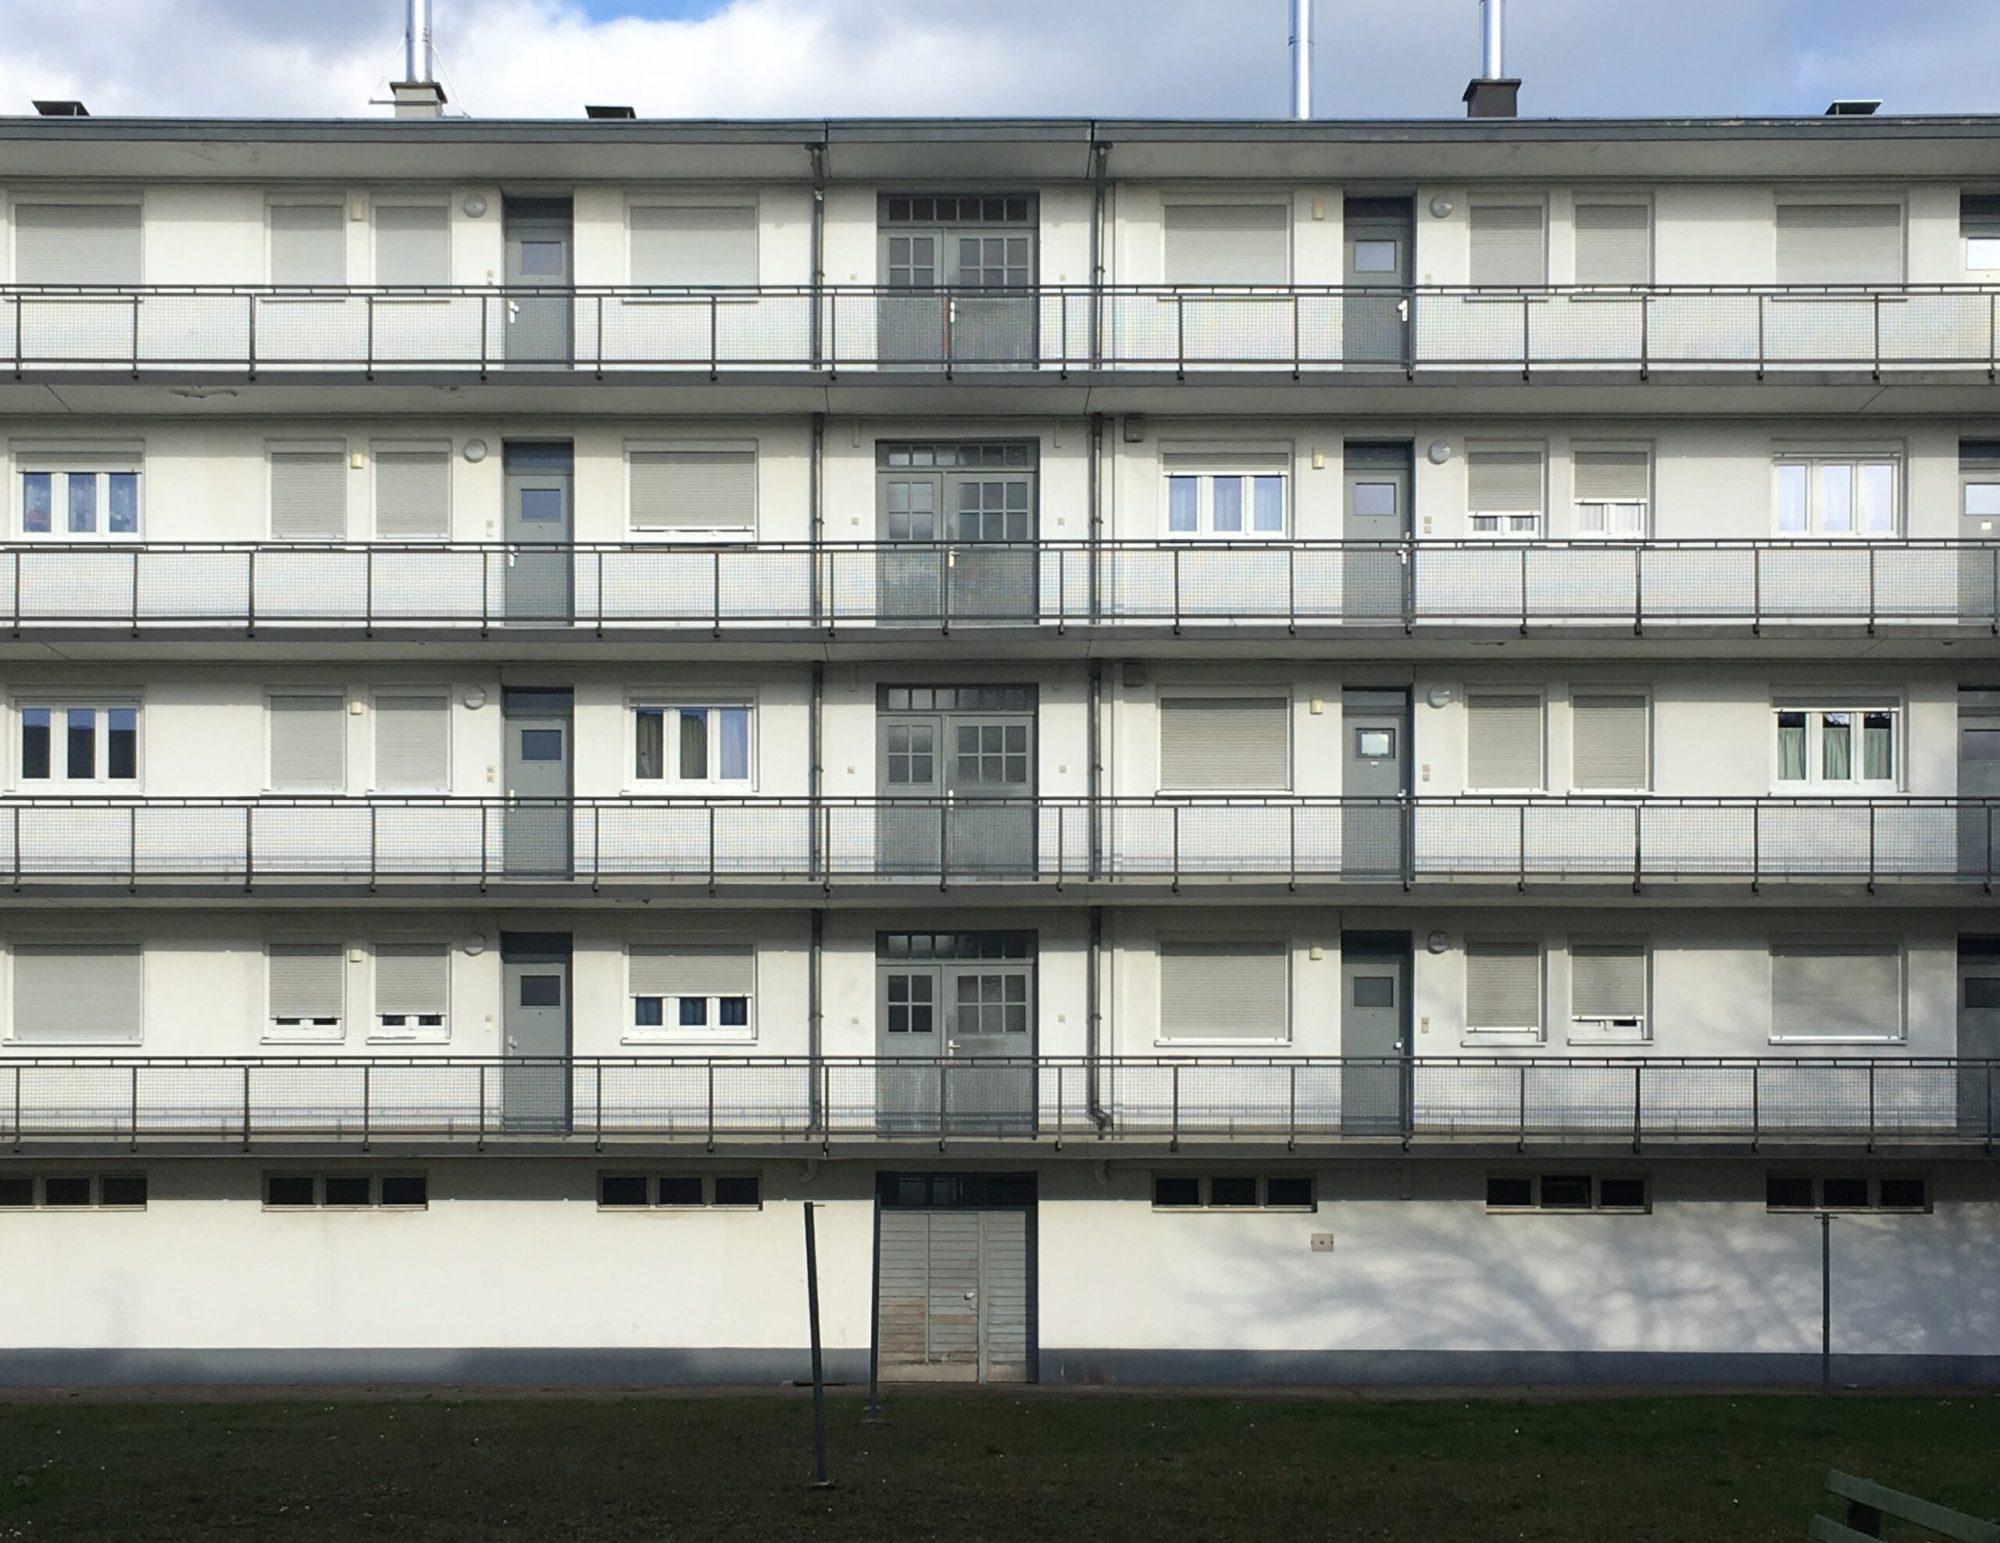 Mehrfamilienhaus, Siedlung Dammerstock, 1928-1929, Architekt: Walter Gropius